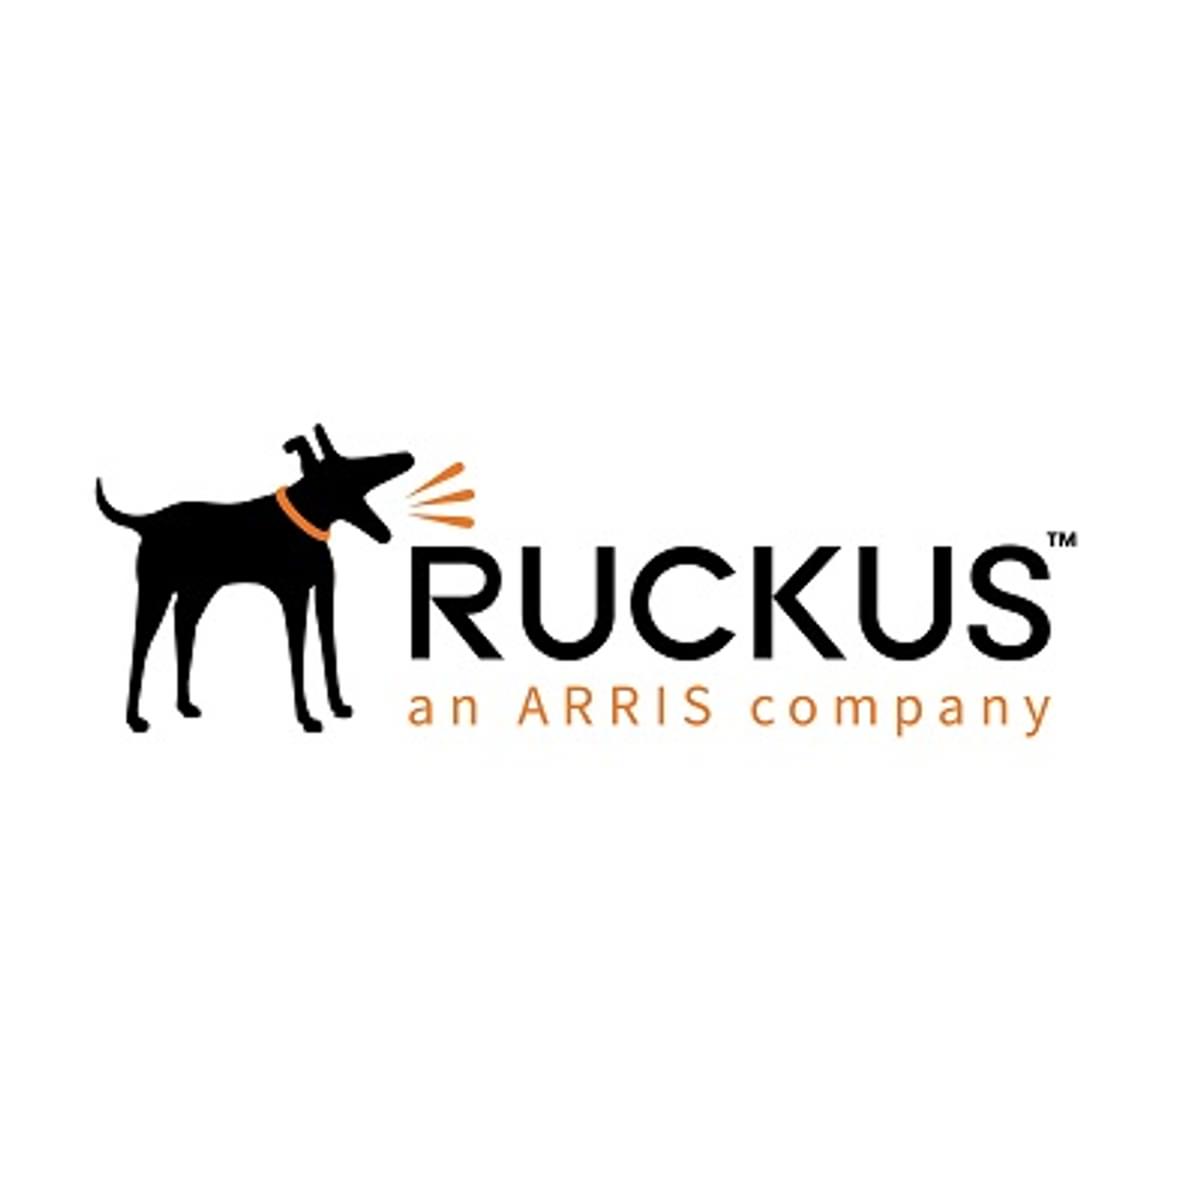 Ruckus R730 draadloze 802.11ax acces point geschikt voor IoT en LTE image